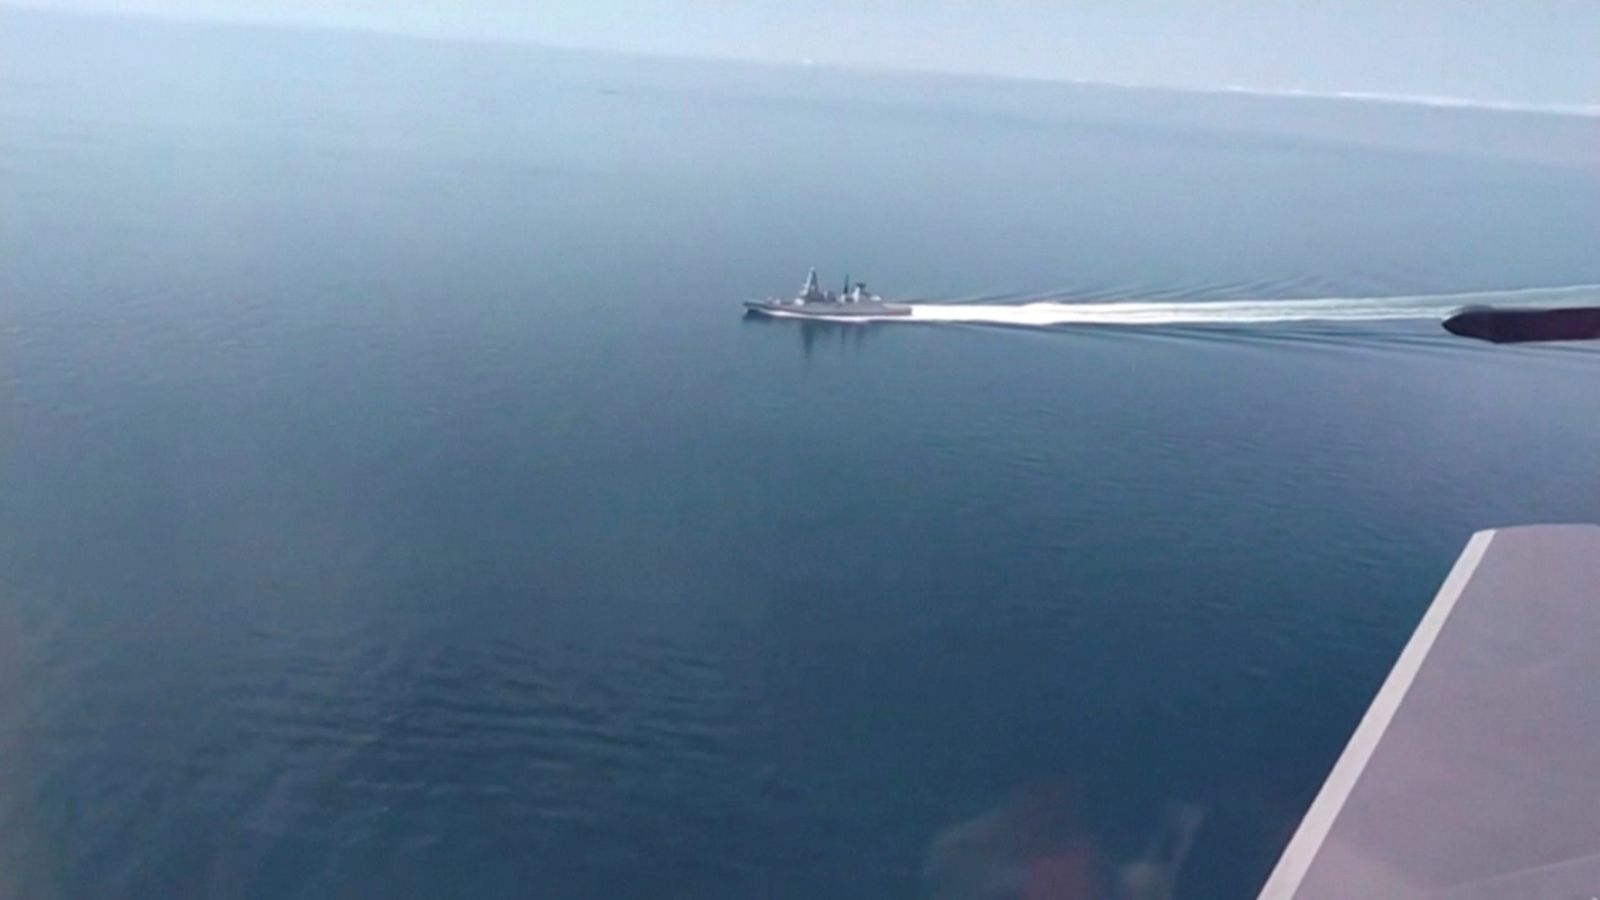 صورة نشرتها وزراة الدفاع الروسية تظهر المدمرة البريطانية في البحر الأسود - REUTERS